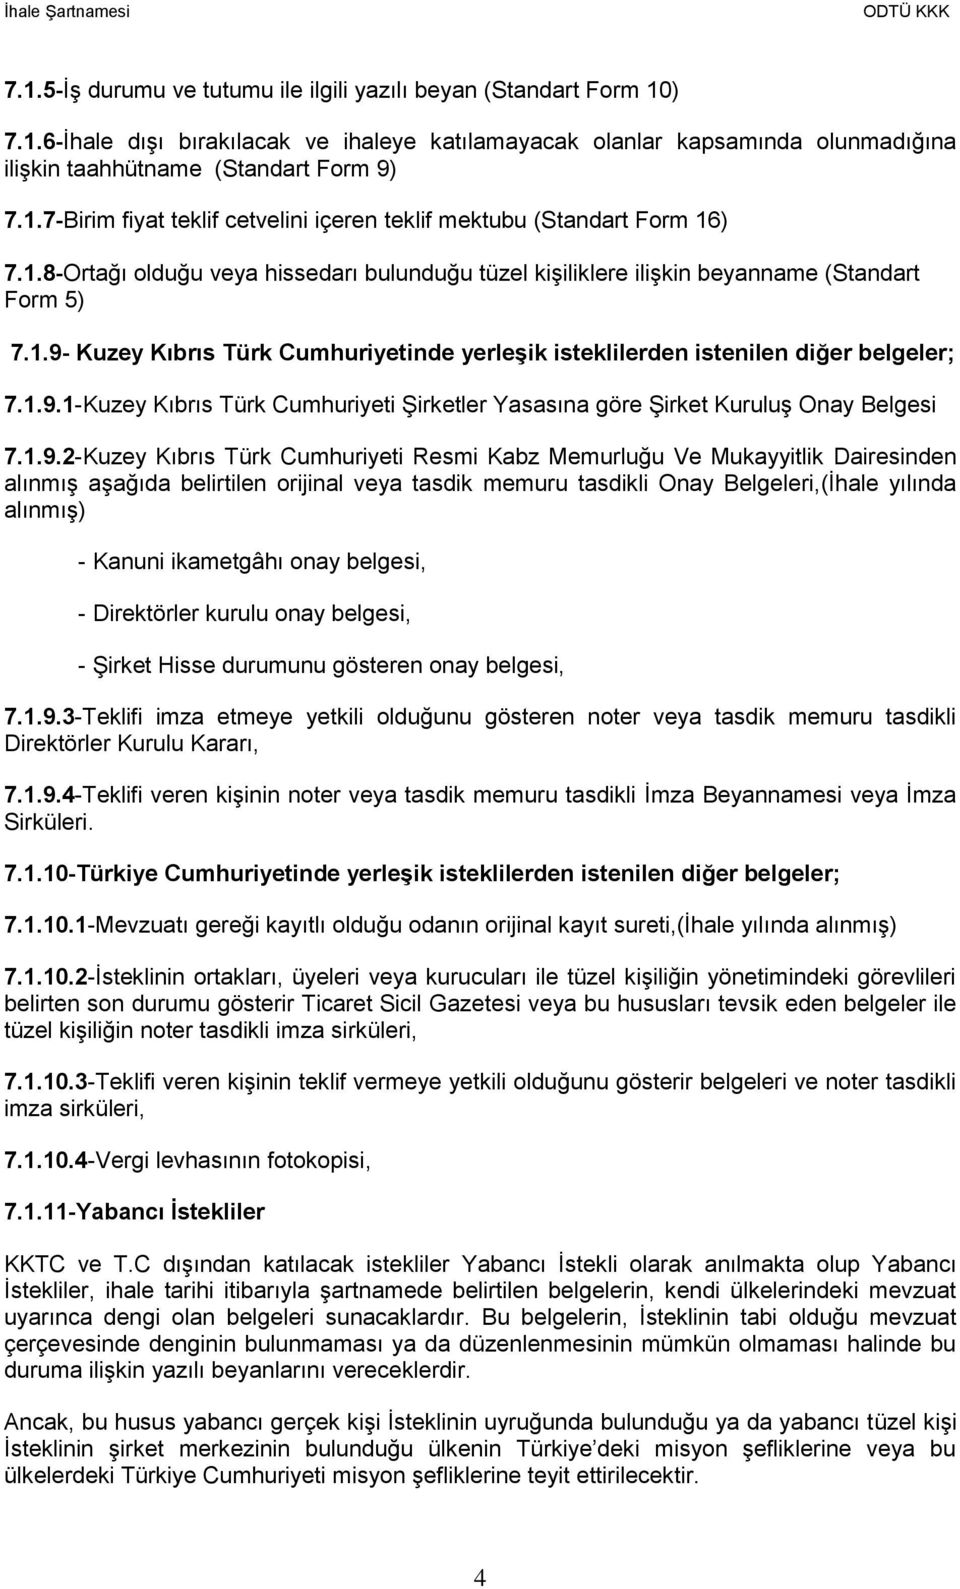 1.9.2-Kuzey Kıbrıs Türk Cumhuriyeti Resmi Kabz Memurluğu Ve Mukayyitlik Dairesinden alınmış aşağıda belirtilen orijinal veya tasdik memuru tasdikli Onay Belgeleri,(İhale yılında alınmış) - Kanuni